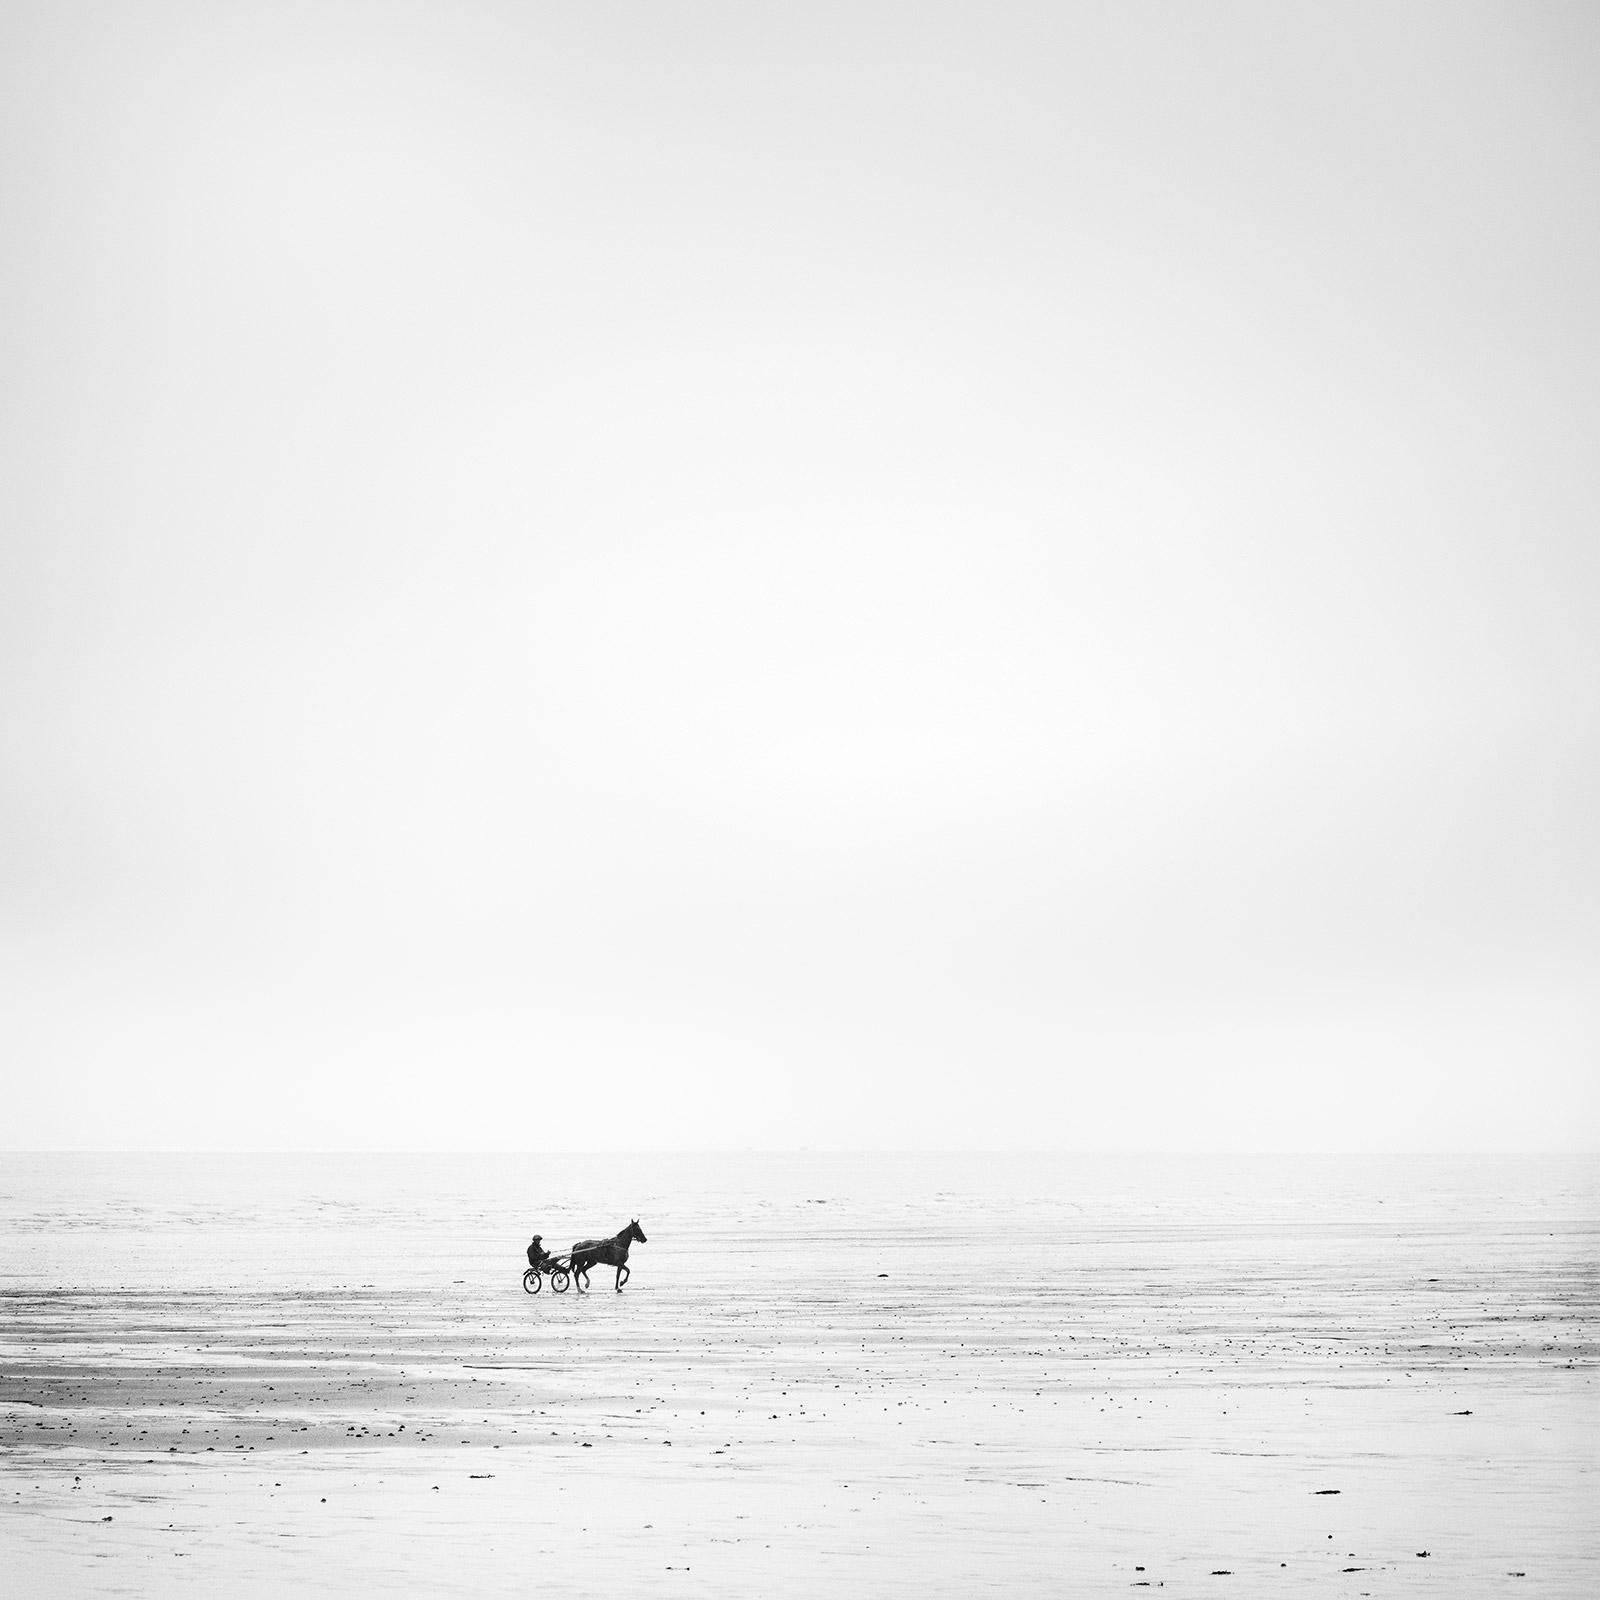 Landscape Photograph Gerald Berghammer - Course Hippique, plage isolée, cheval, photographie noir et blanc, paysage, art